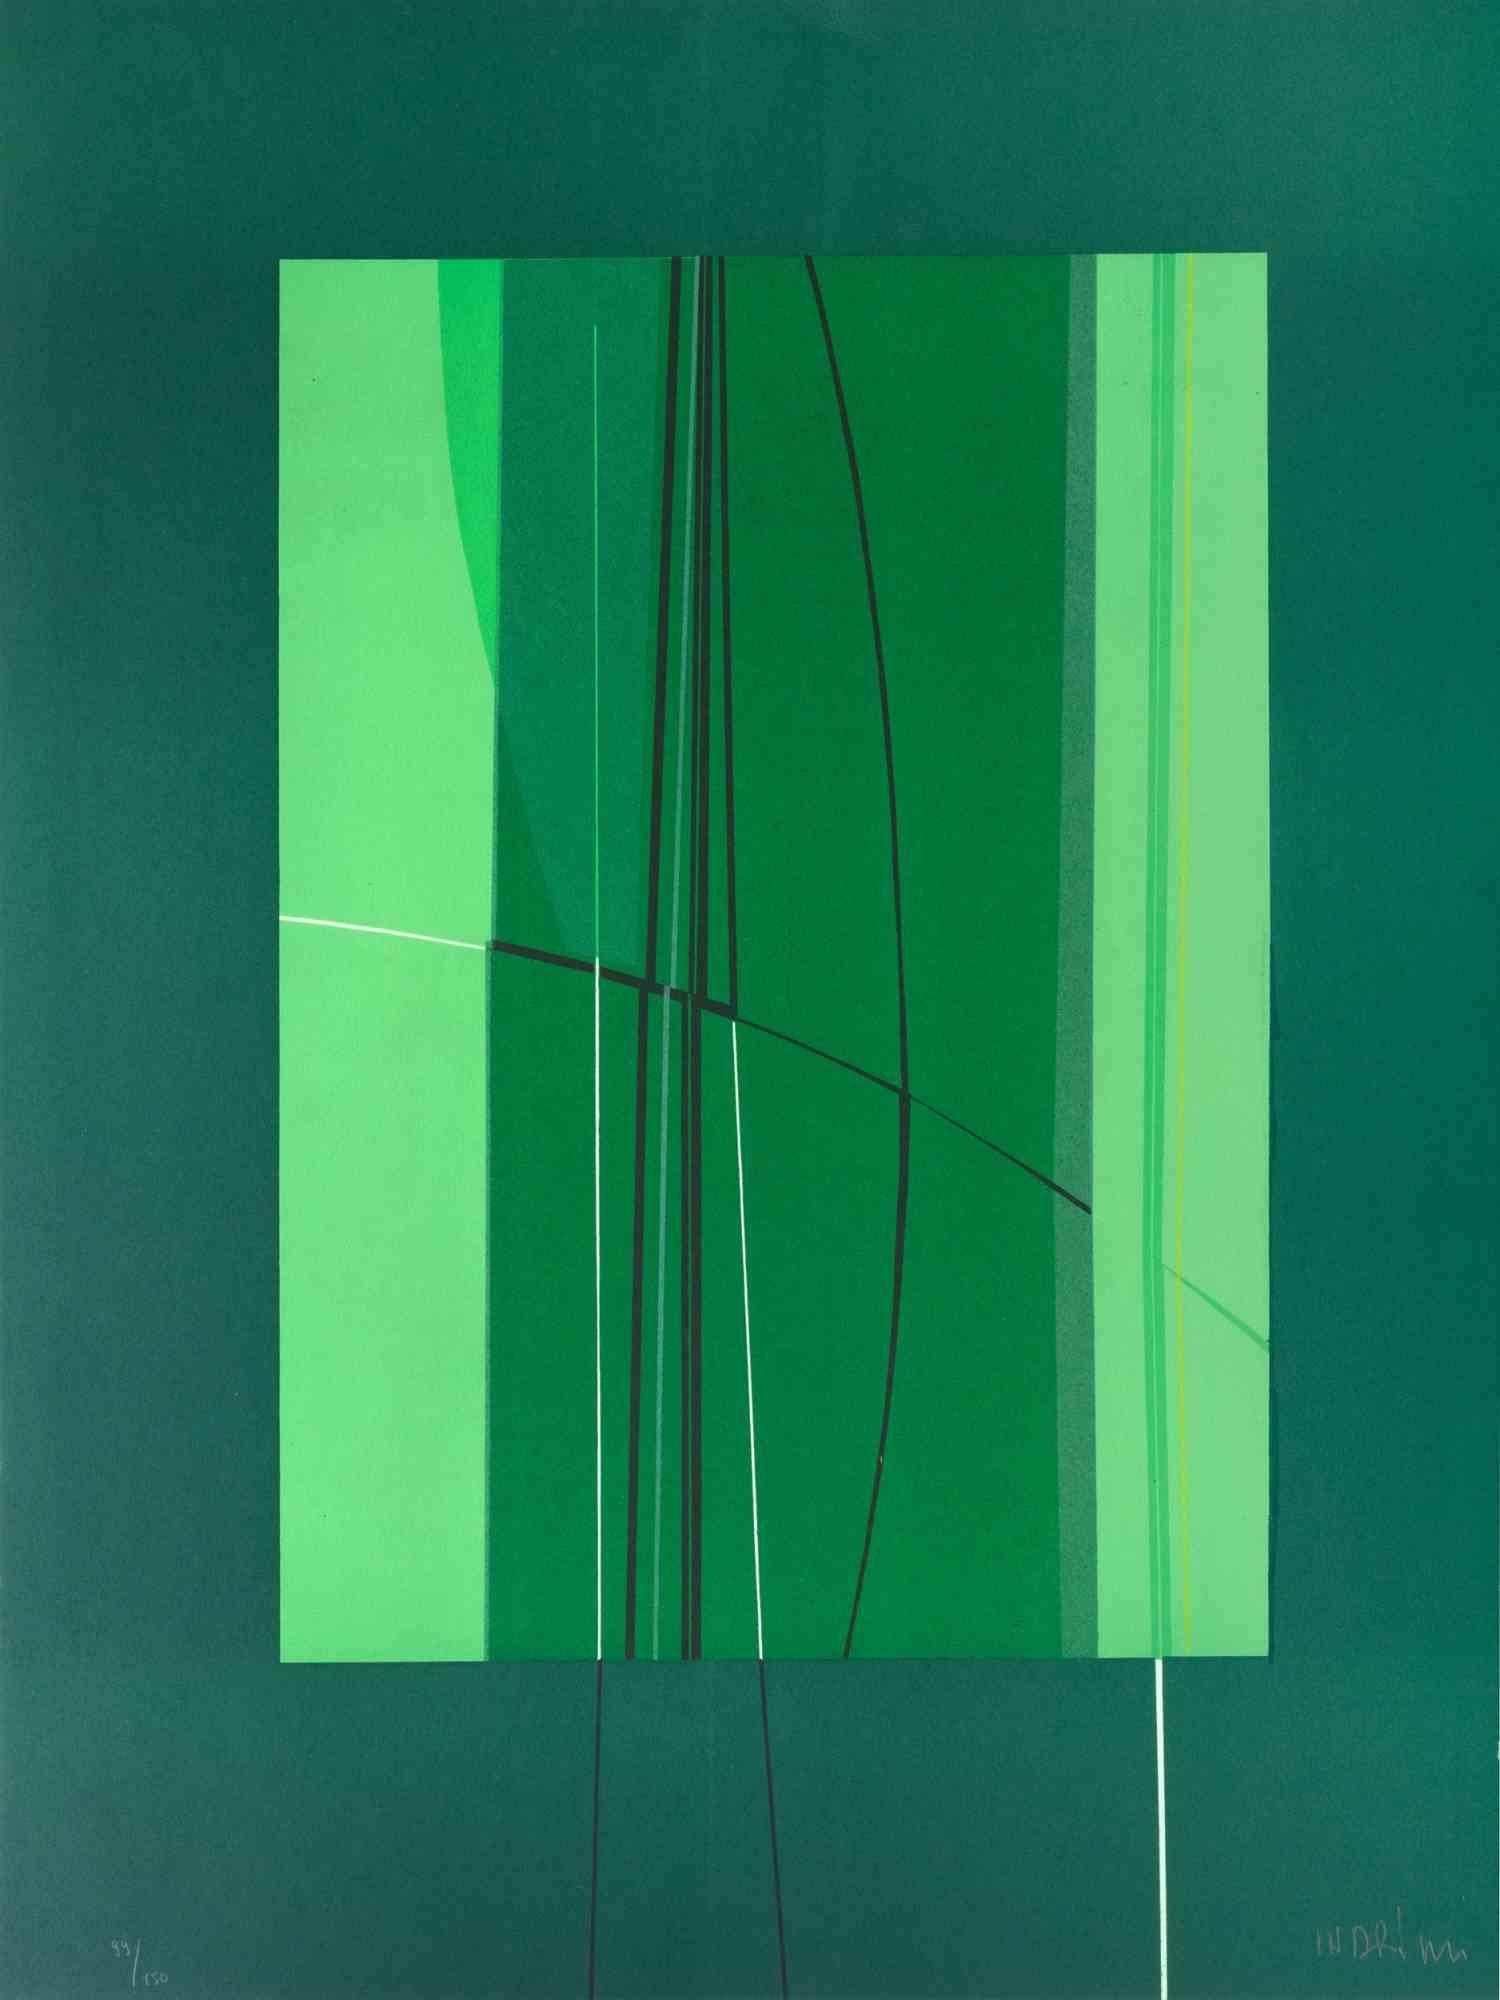 Green est une œuvre d'art contemporain réalisée par Lorenzo Indrimi dans les années 1970.

Lithographie en couleurs mélangées.

Signé à la main et daté dans la marge inférieure.

Édition de 99/150.